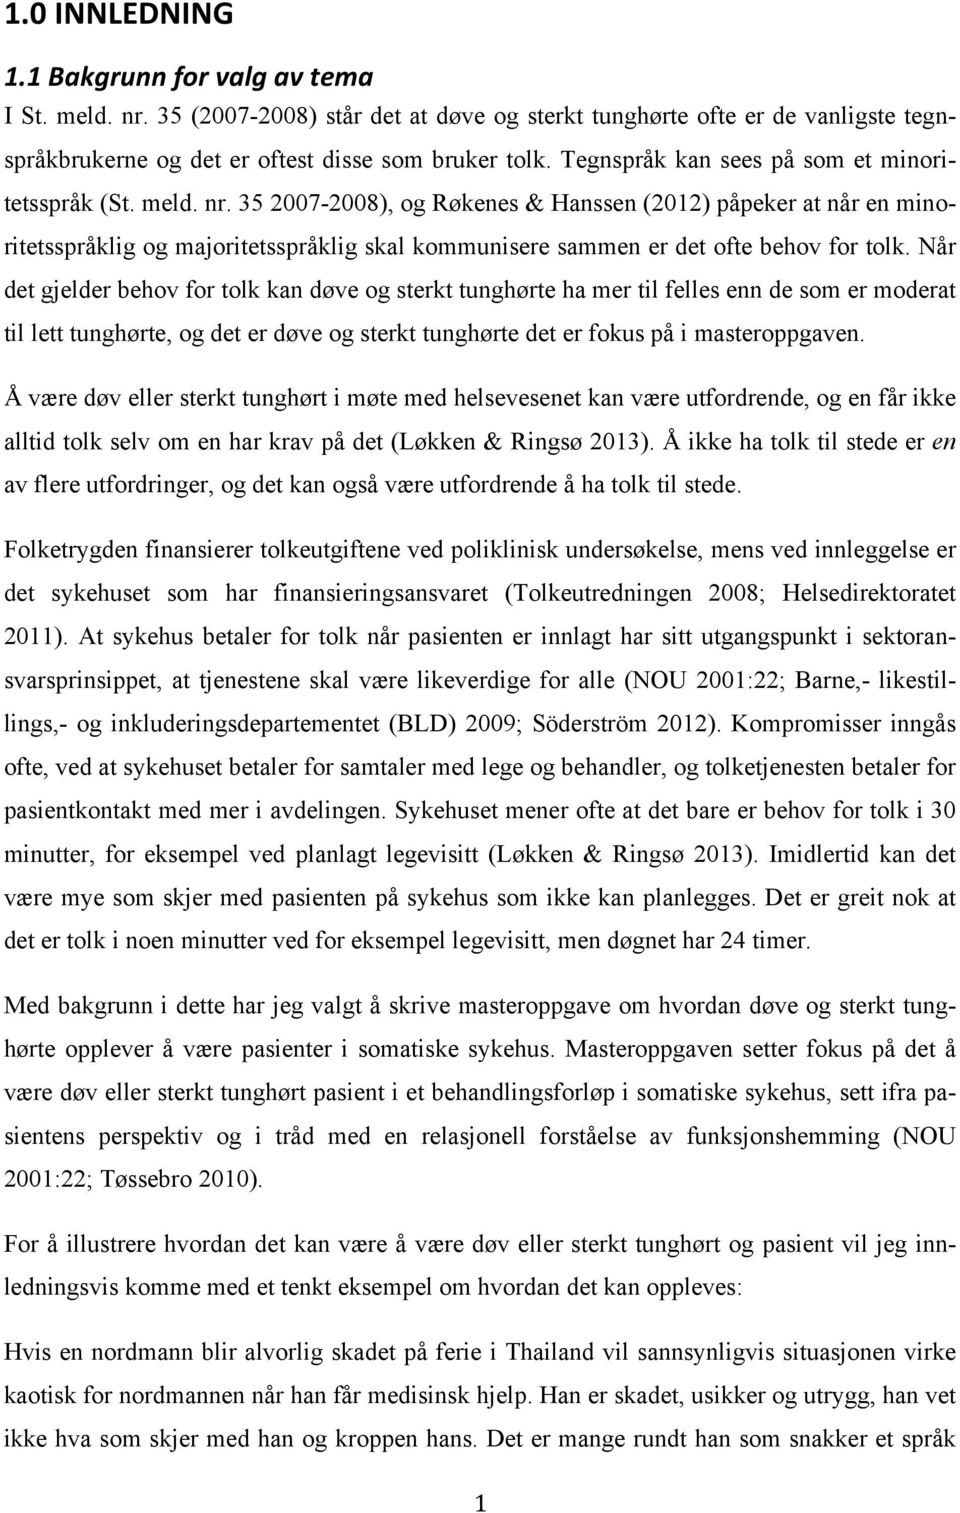 35 2007-2008), og Røkenes & Hanssen (2012) påpeker at når en minoritetsspråklig og majoritetsspråklig skal kommunisere sammen er det ofte behov for tolk.